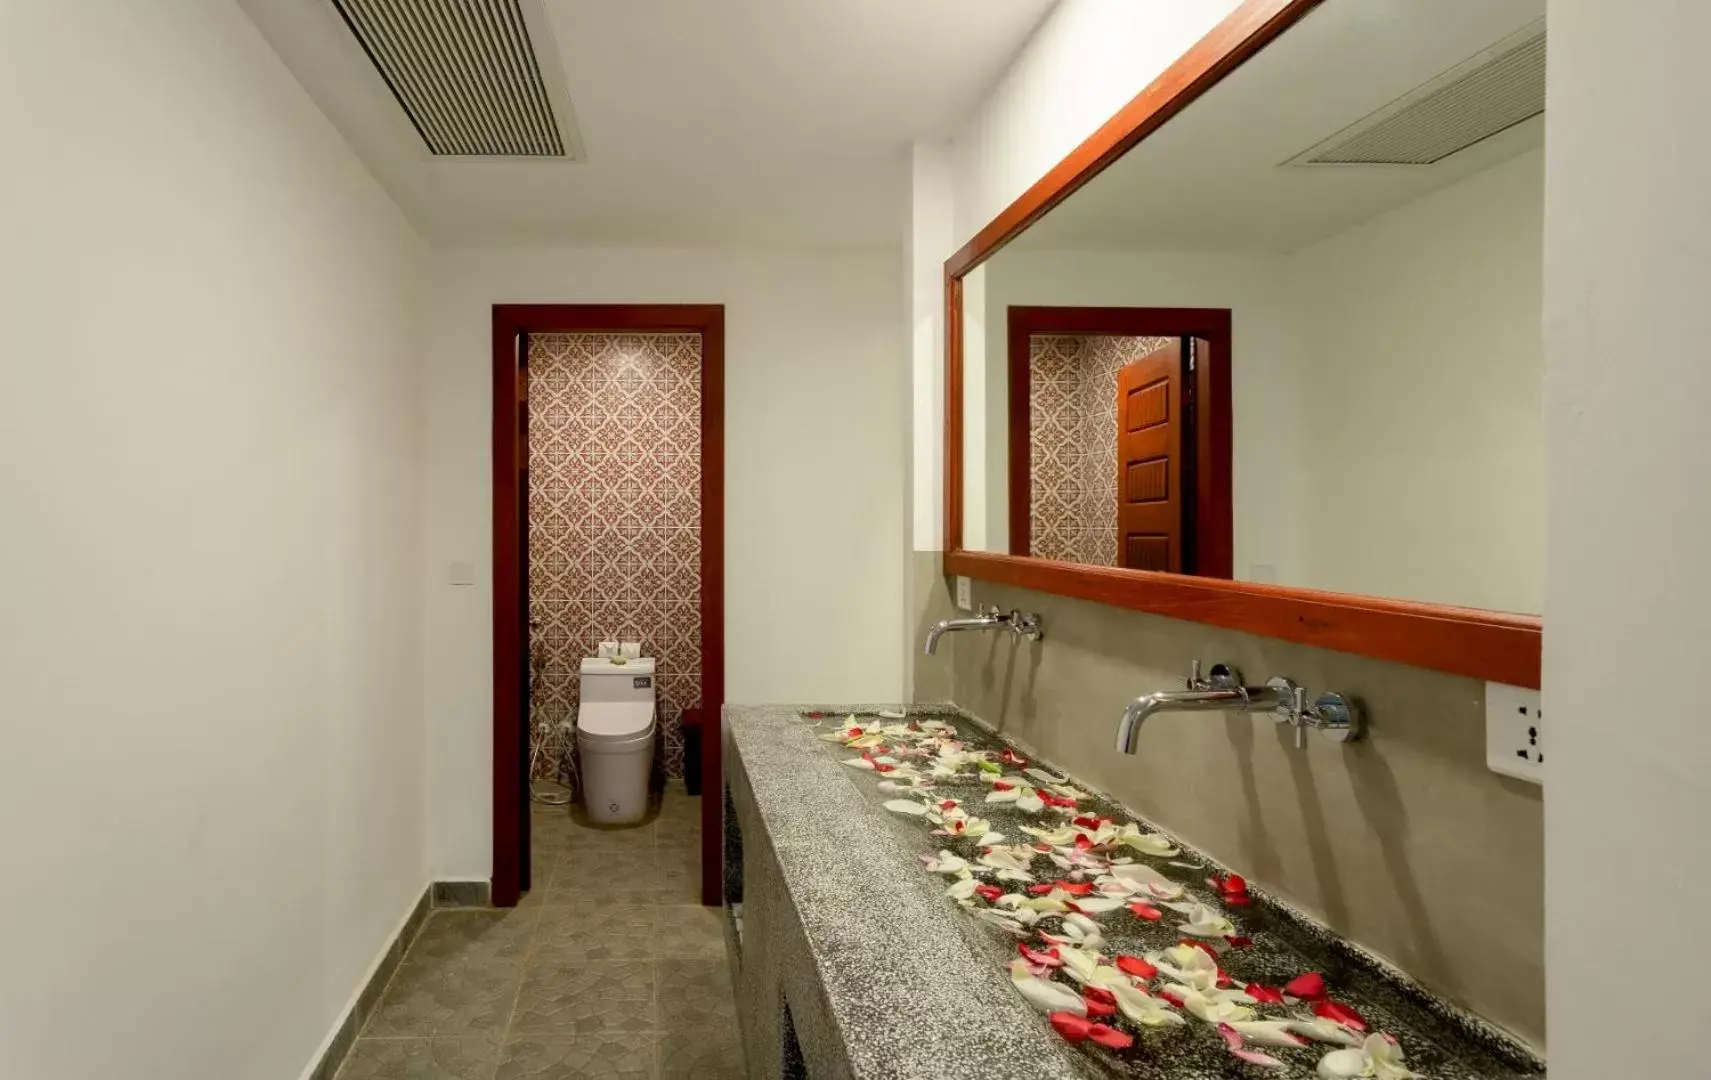 Shower, Bathroom in Khmer Mansion Residence